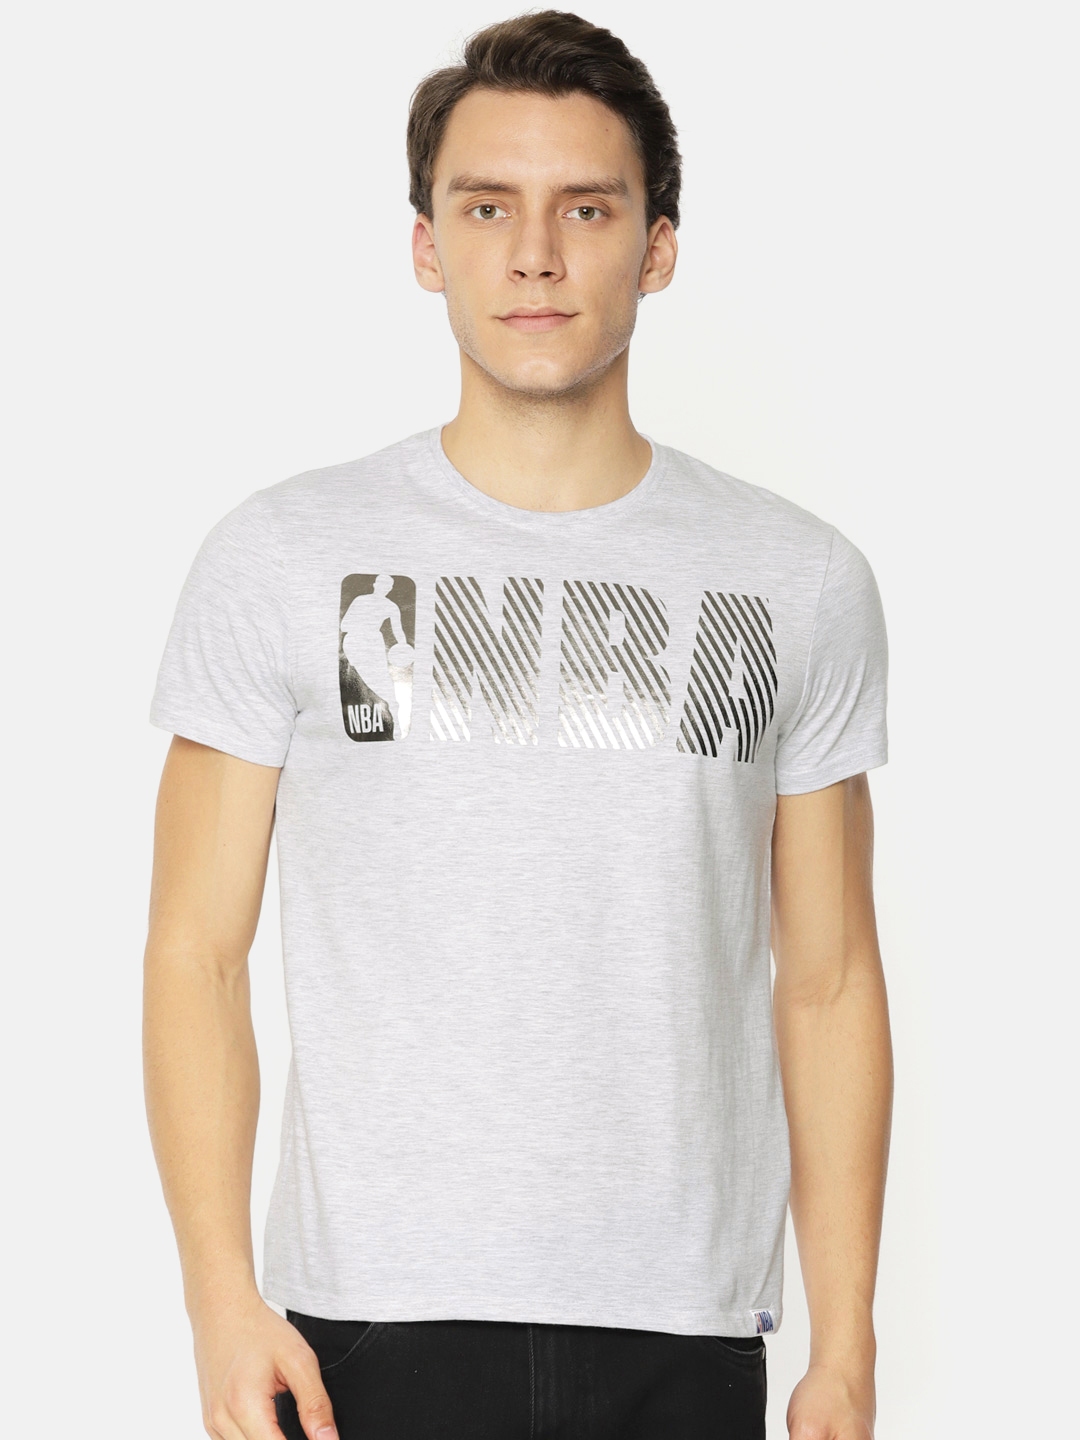 Buy NBA Men Grey Melange Printed Round Neck T Shirt - Tshirts for Men ...